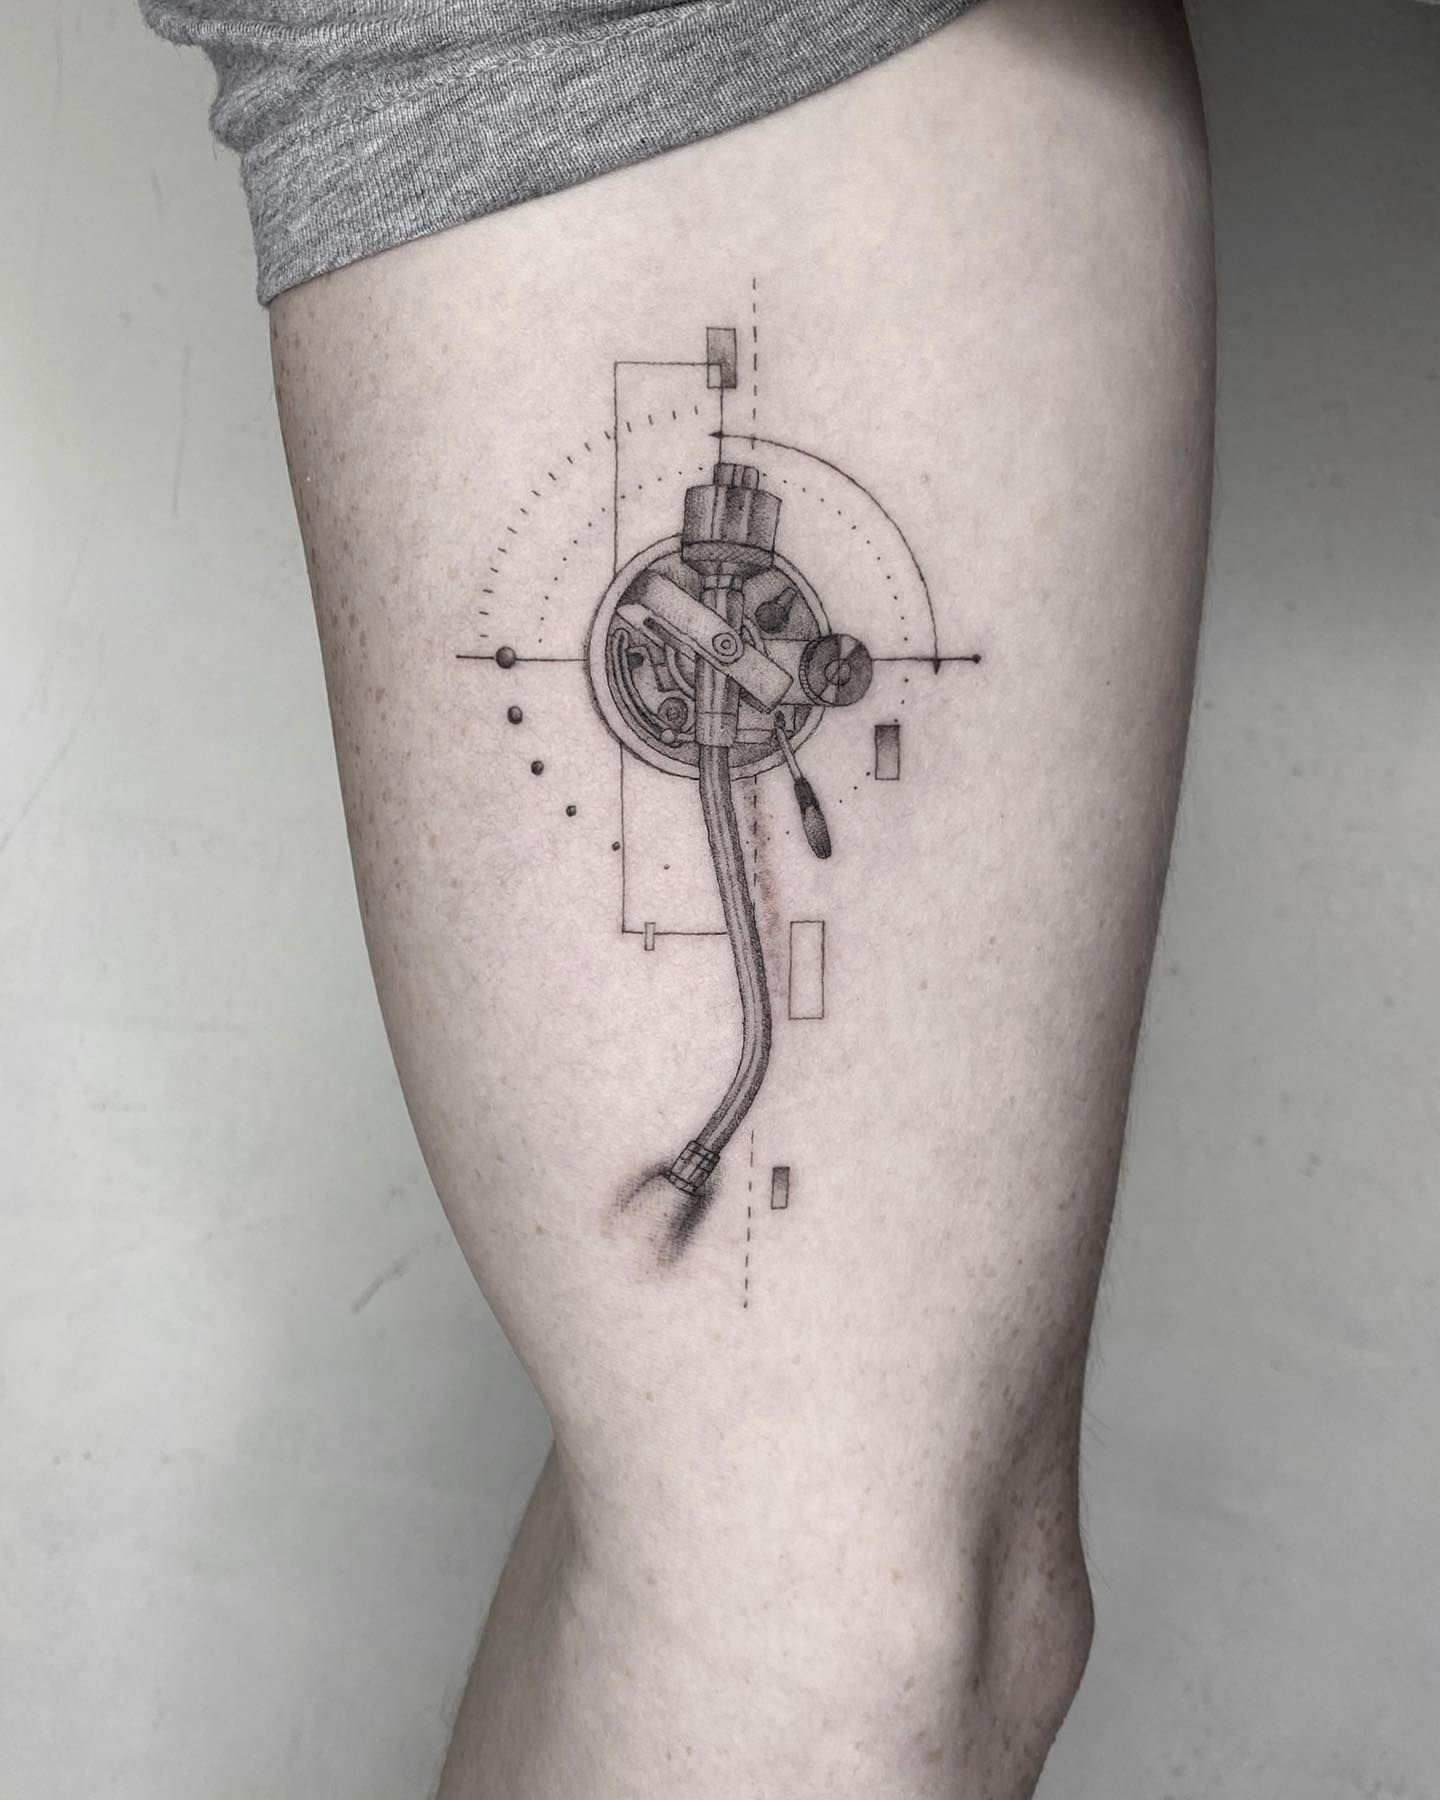 tattrx | Circular tattoo, Gear tattoo, Ink tattoo